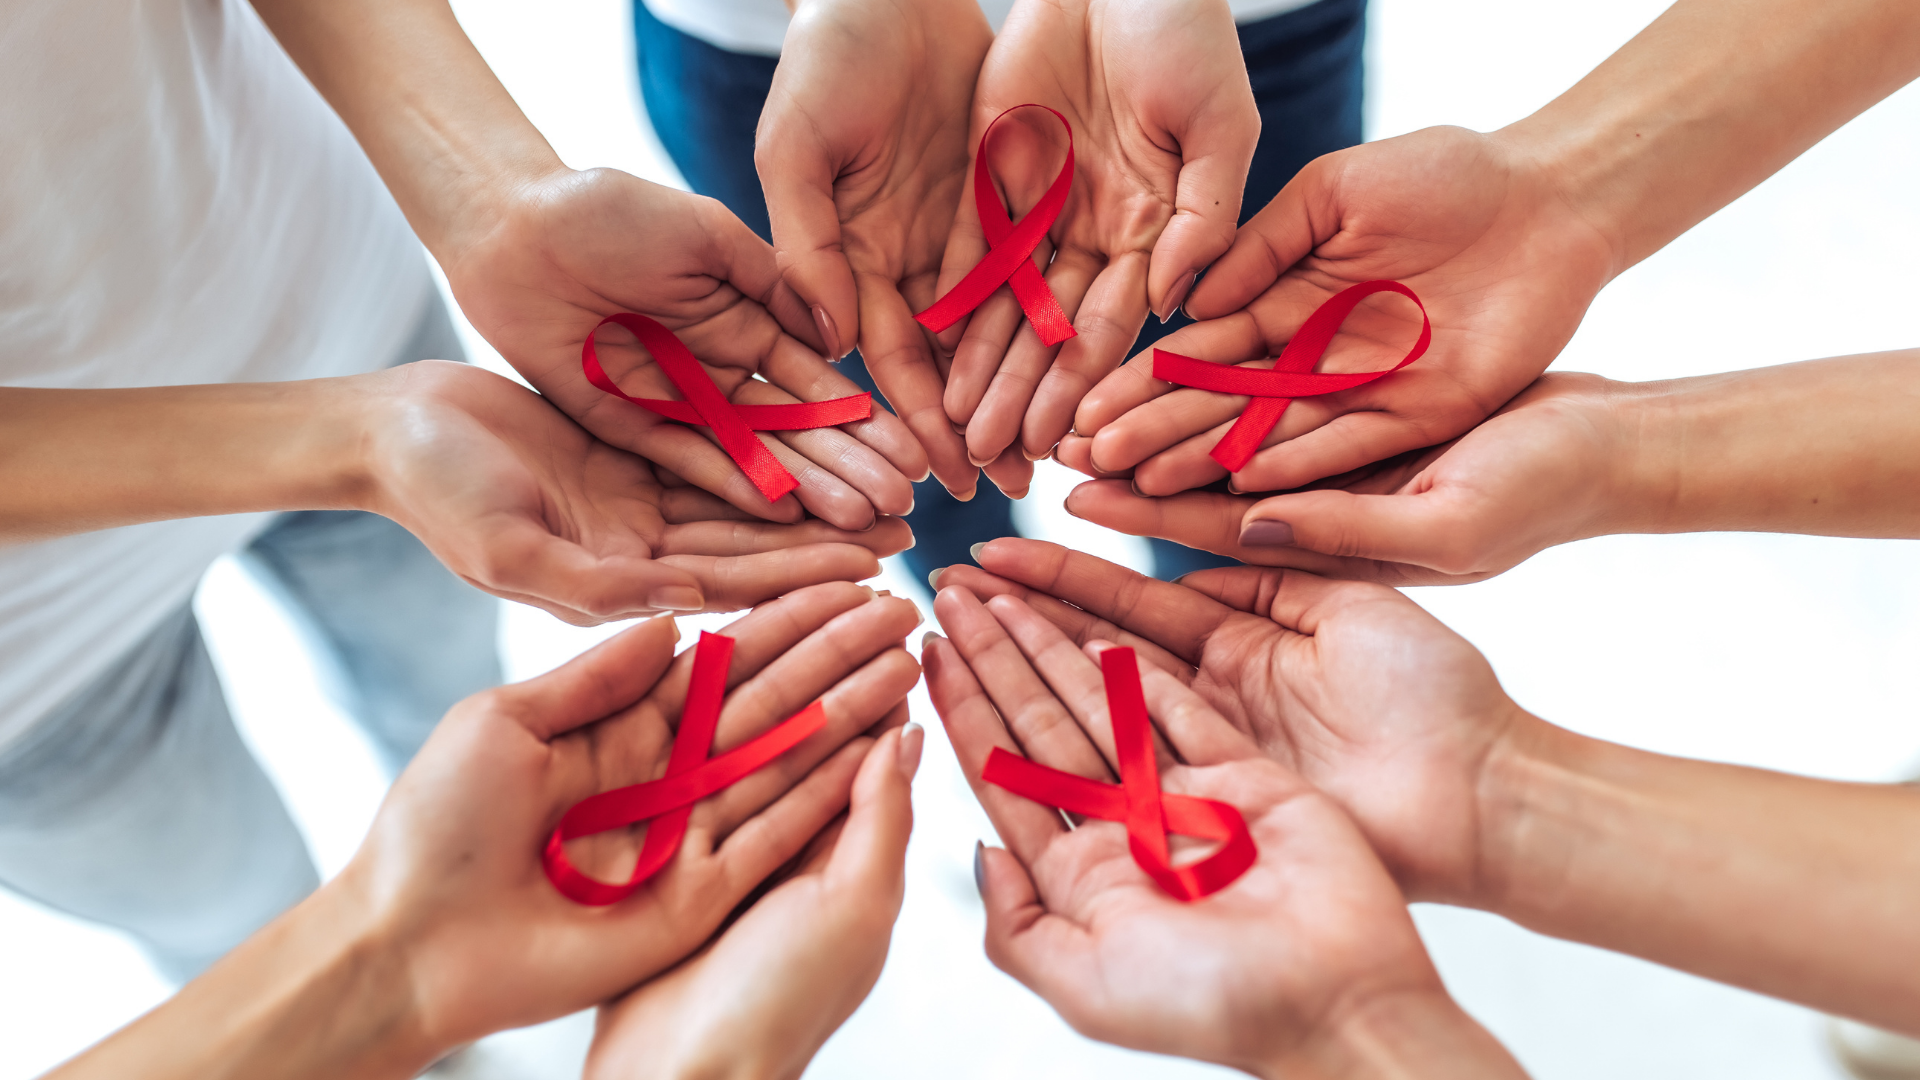 L'immagine rappresenta un insieme di mani aperte che mostrano un fiocco rosso, simbolo della lotto contro l'HIV